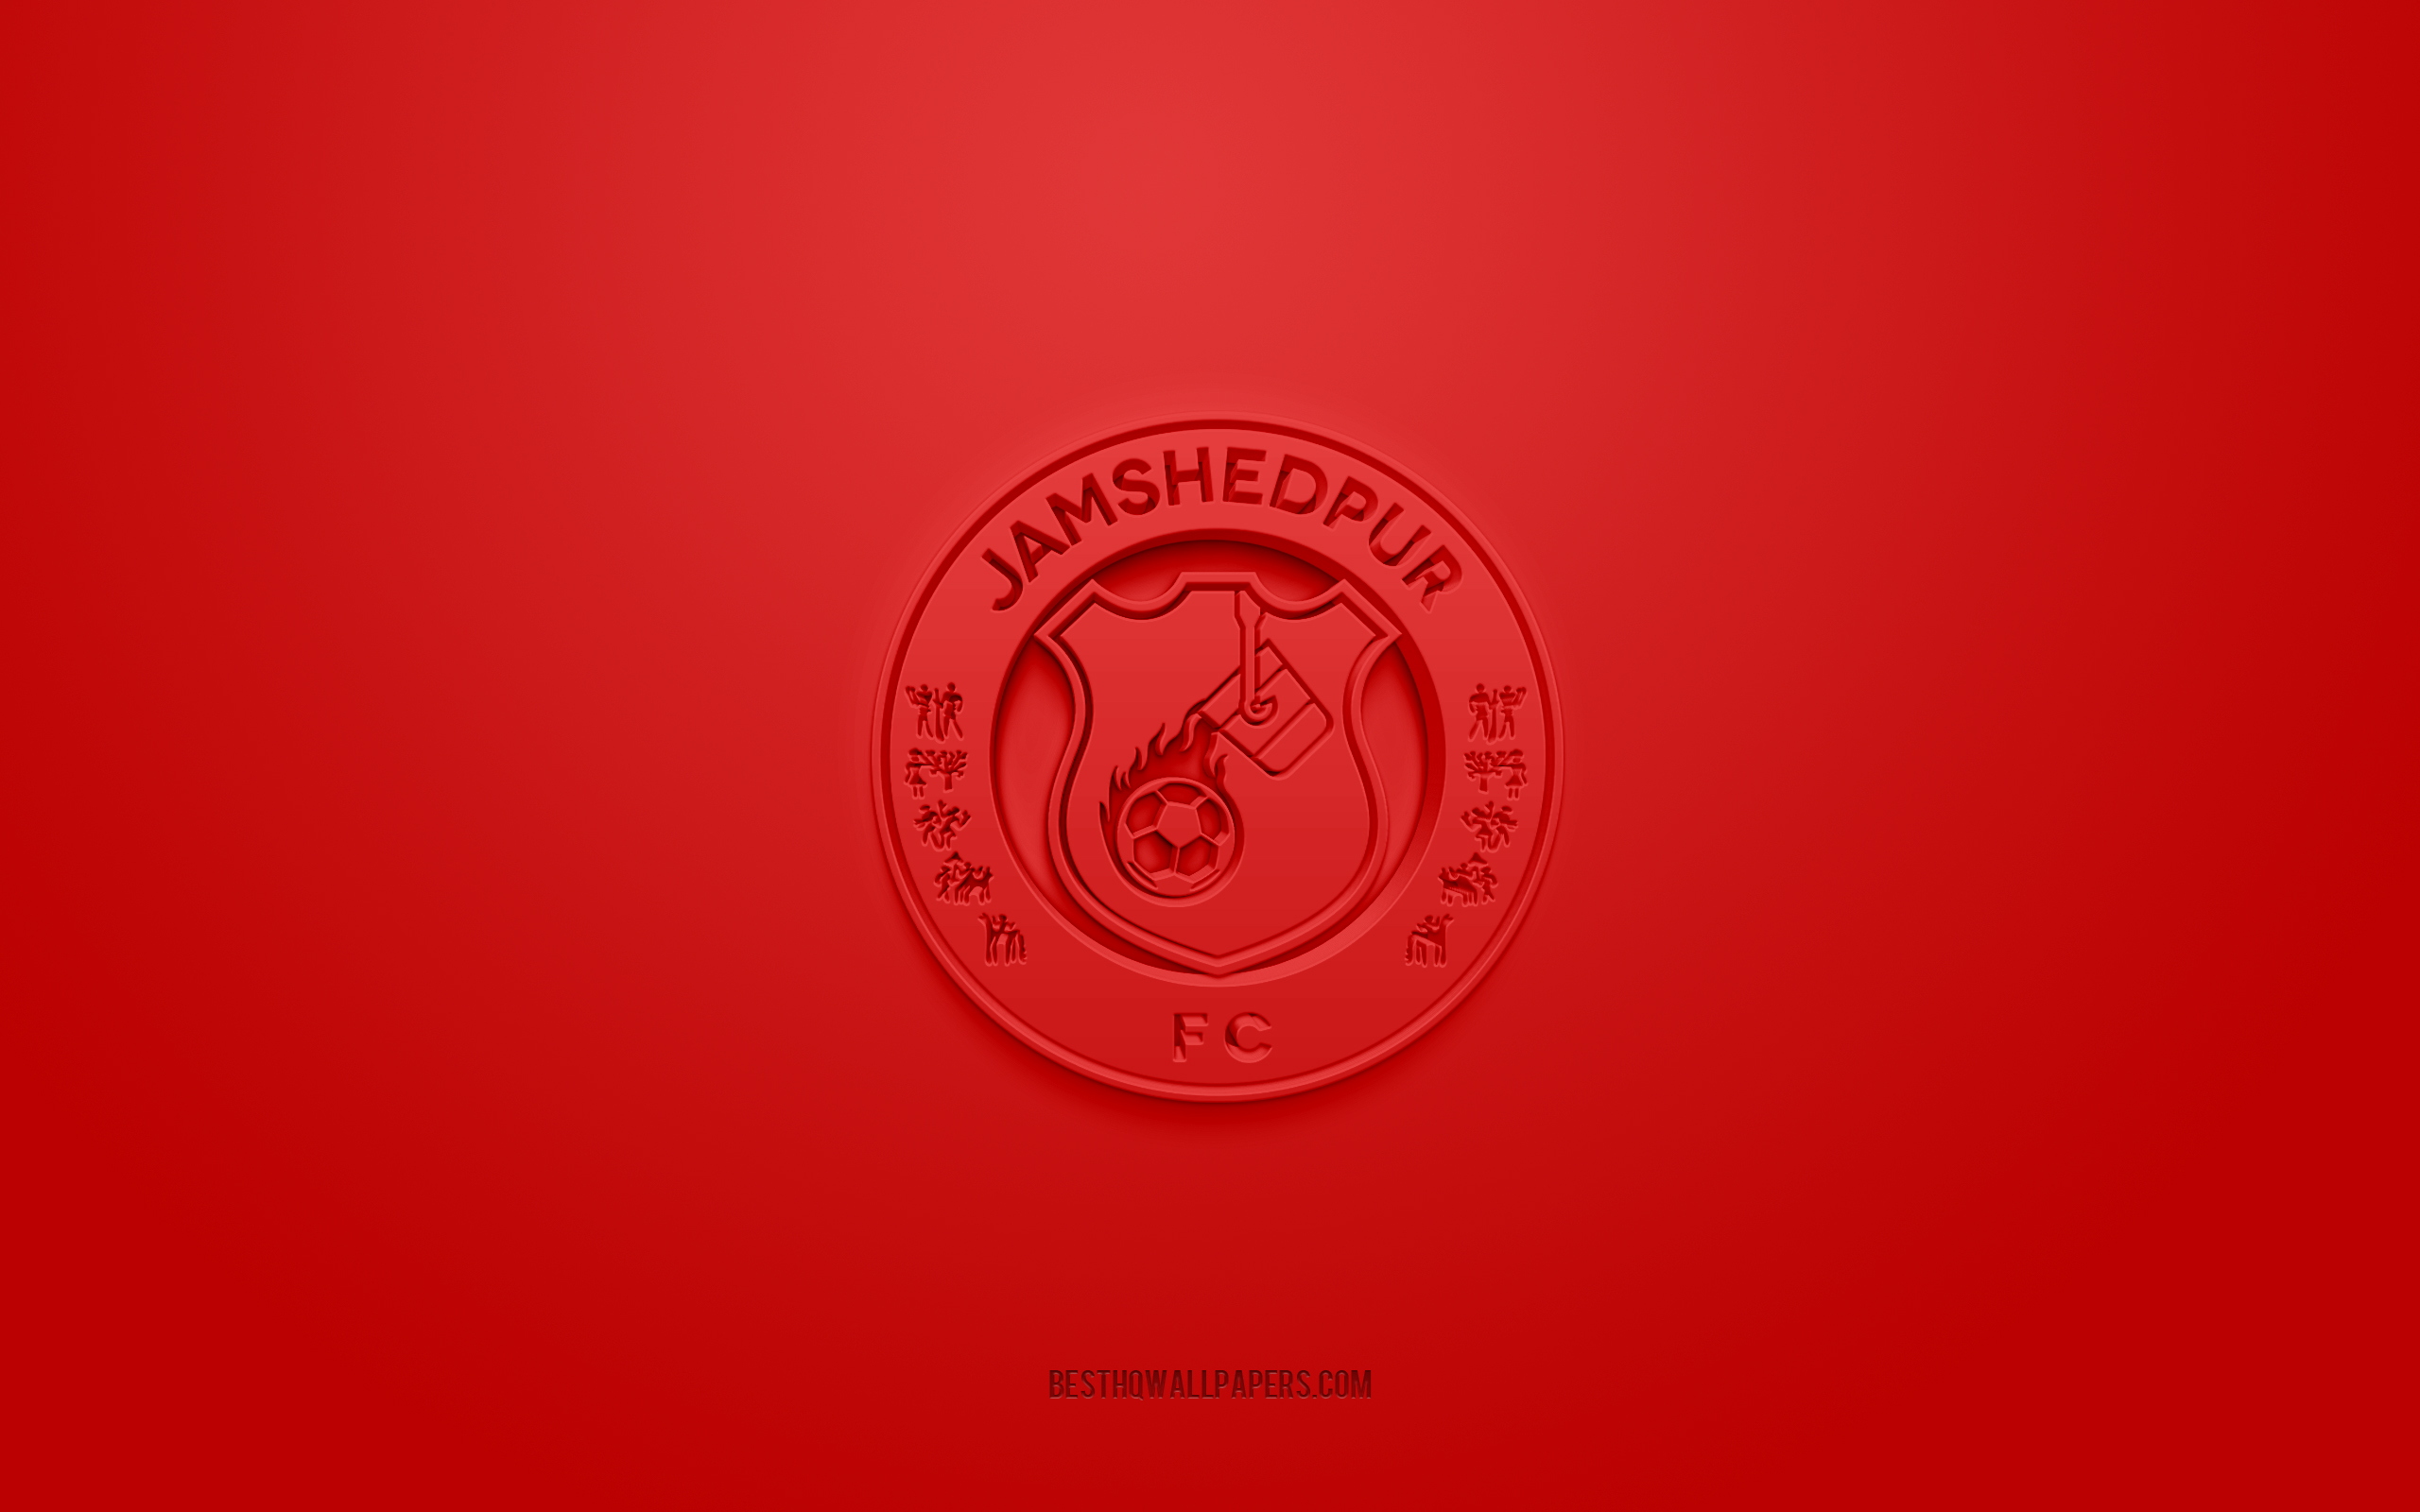 Download wallpaper Jamshedpur FC, creative 3D logo, red background, 3D emblem, Indian football club, Indian Super League, Jamshedpur, India, 3D art, football, Jamshedpur FC 3D logo for desktop with resolution 2560x1600. High